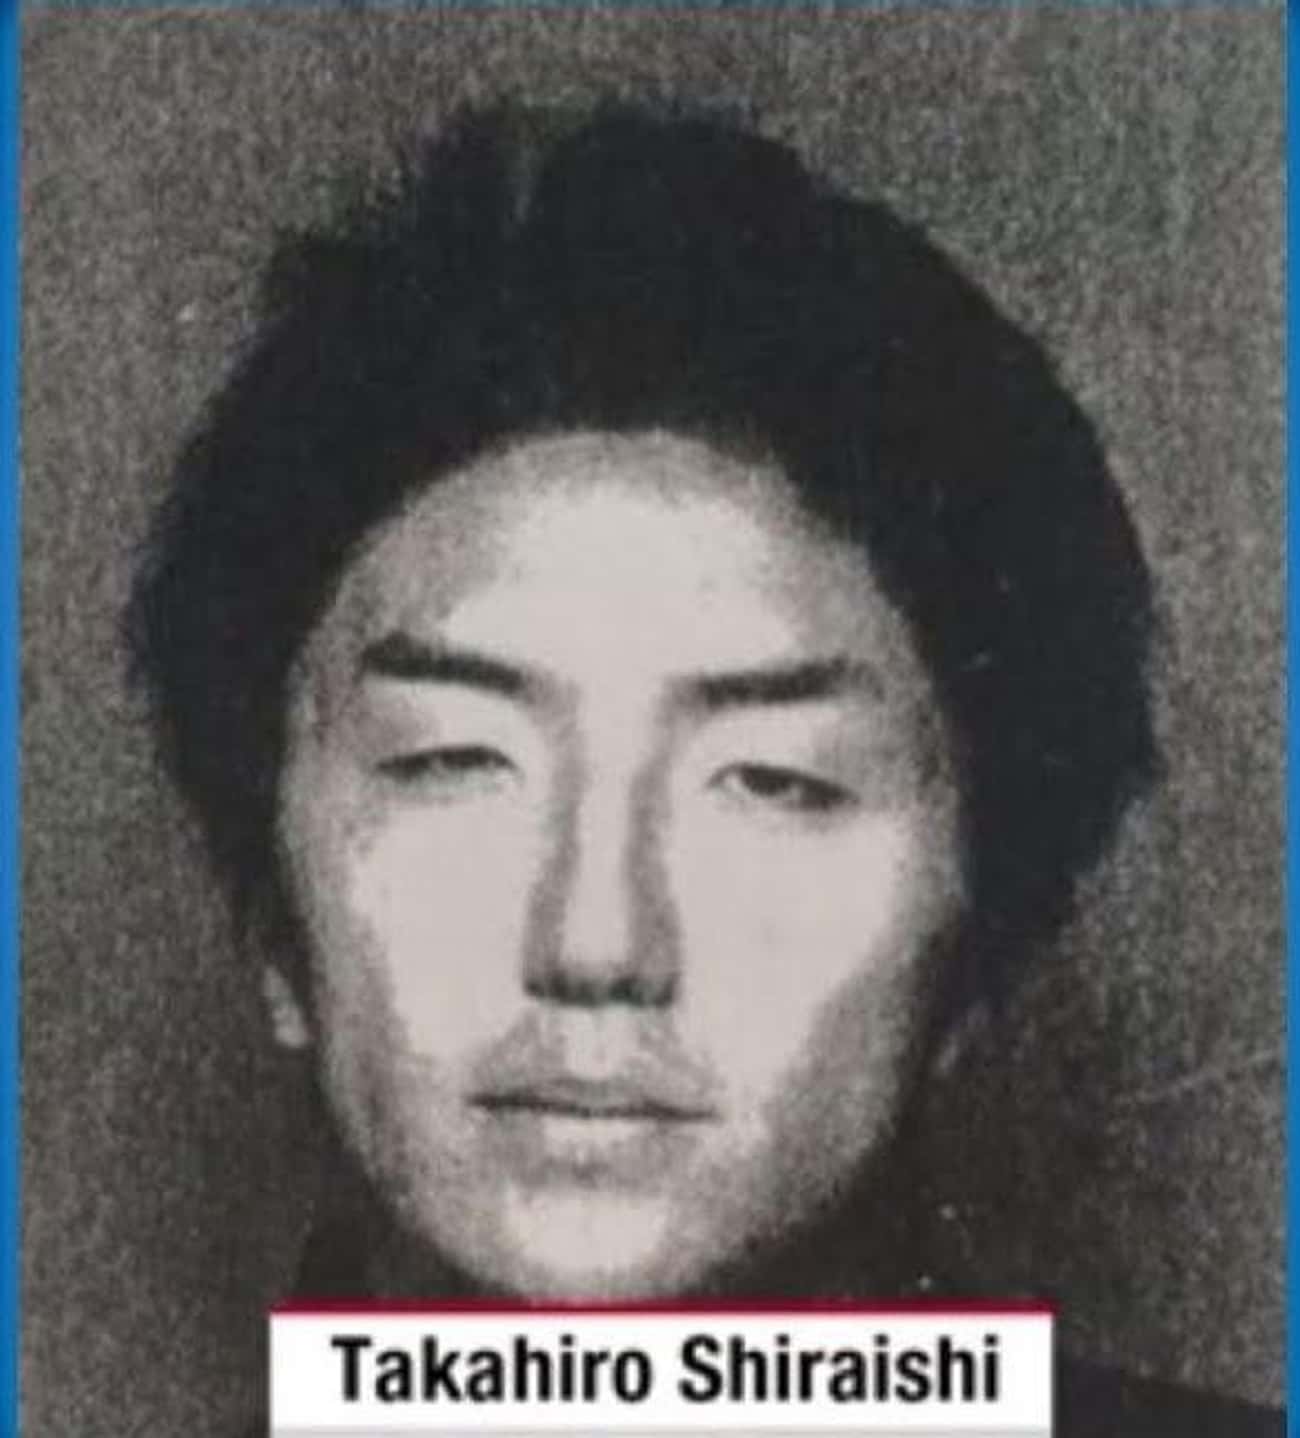 Shiraishi Killed Nine People